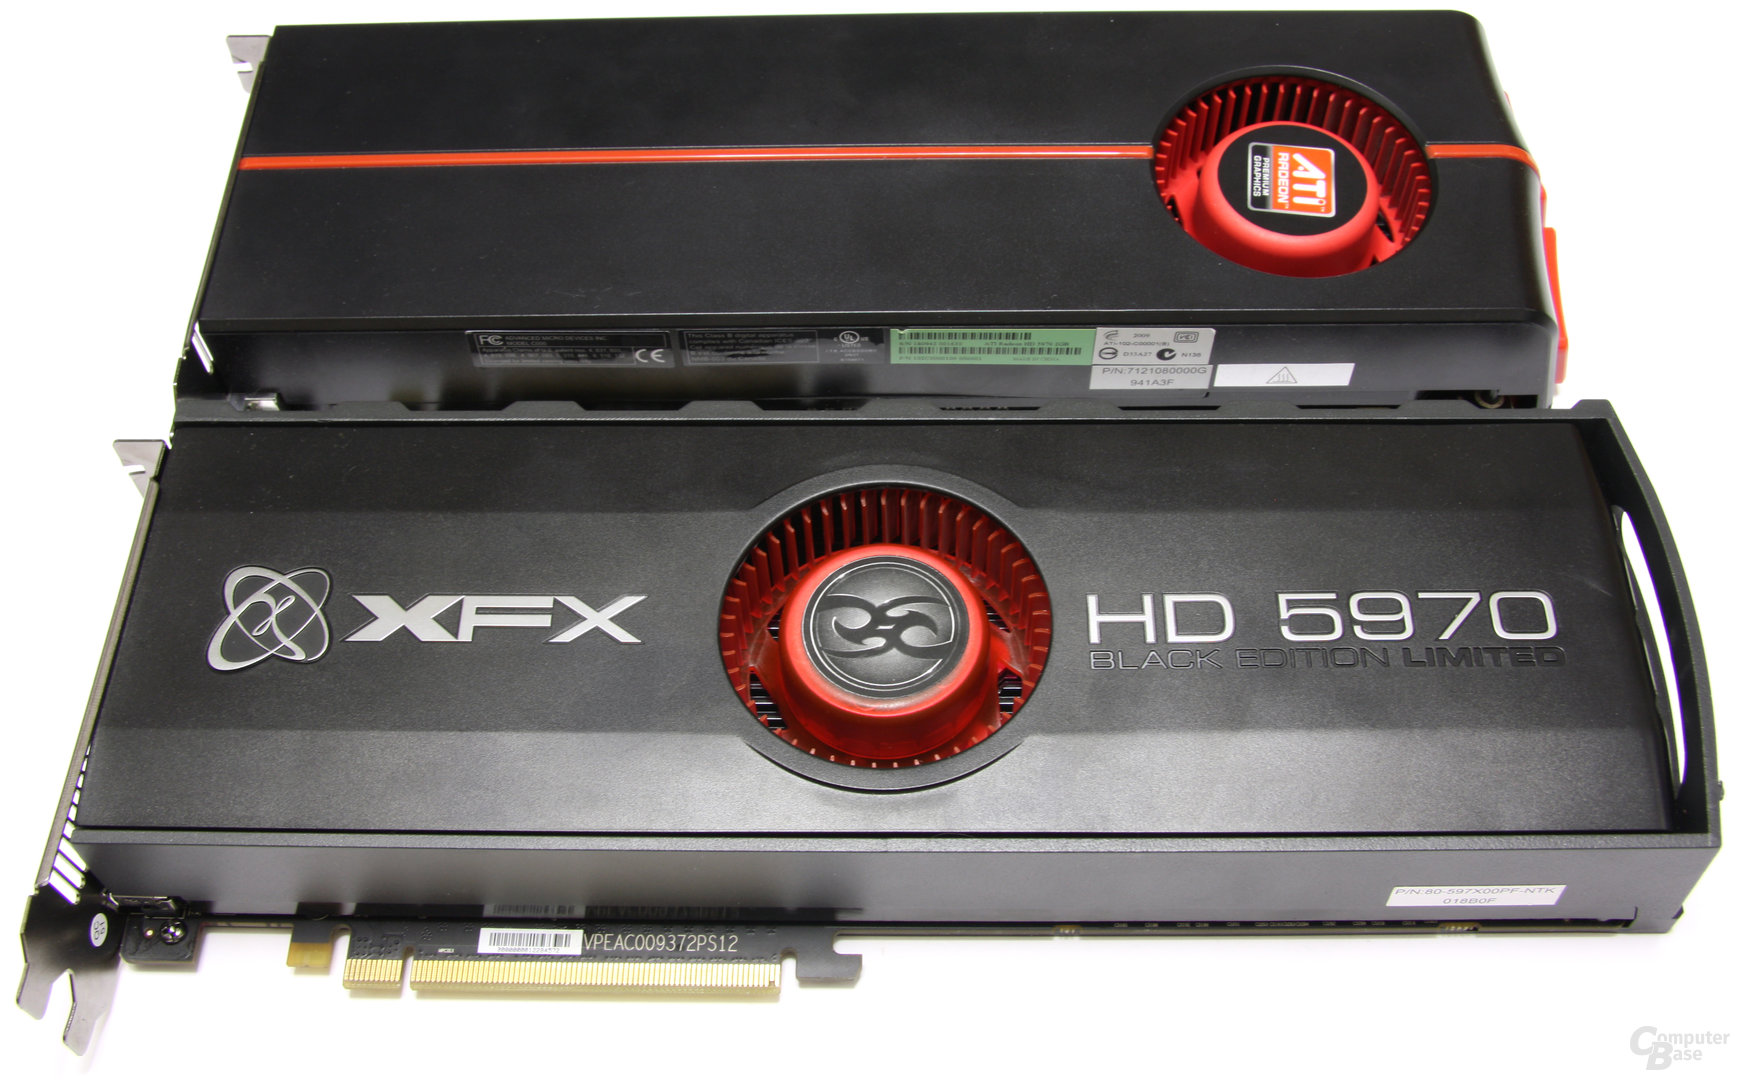 XFX HD 5970 Black LE vs Referenzdesign